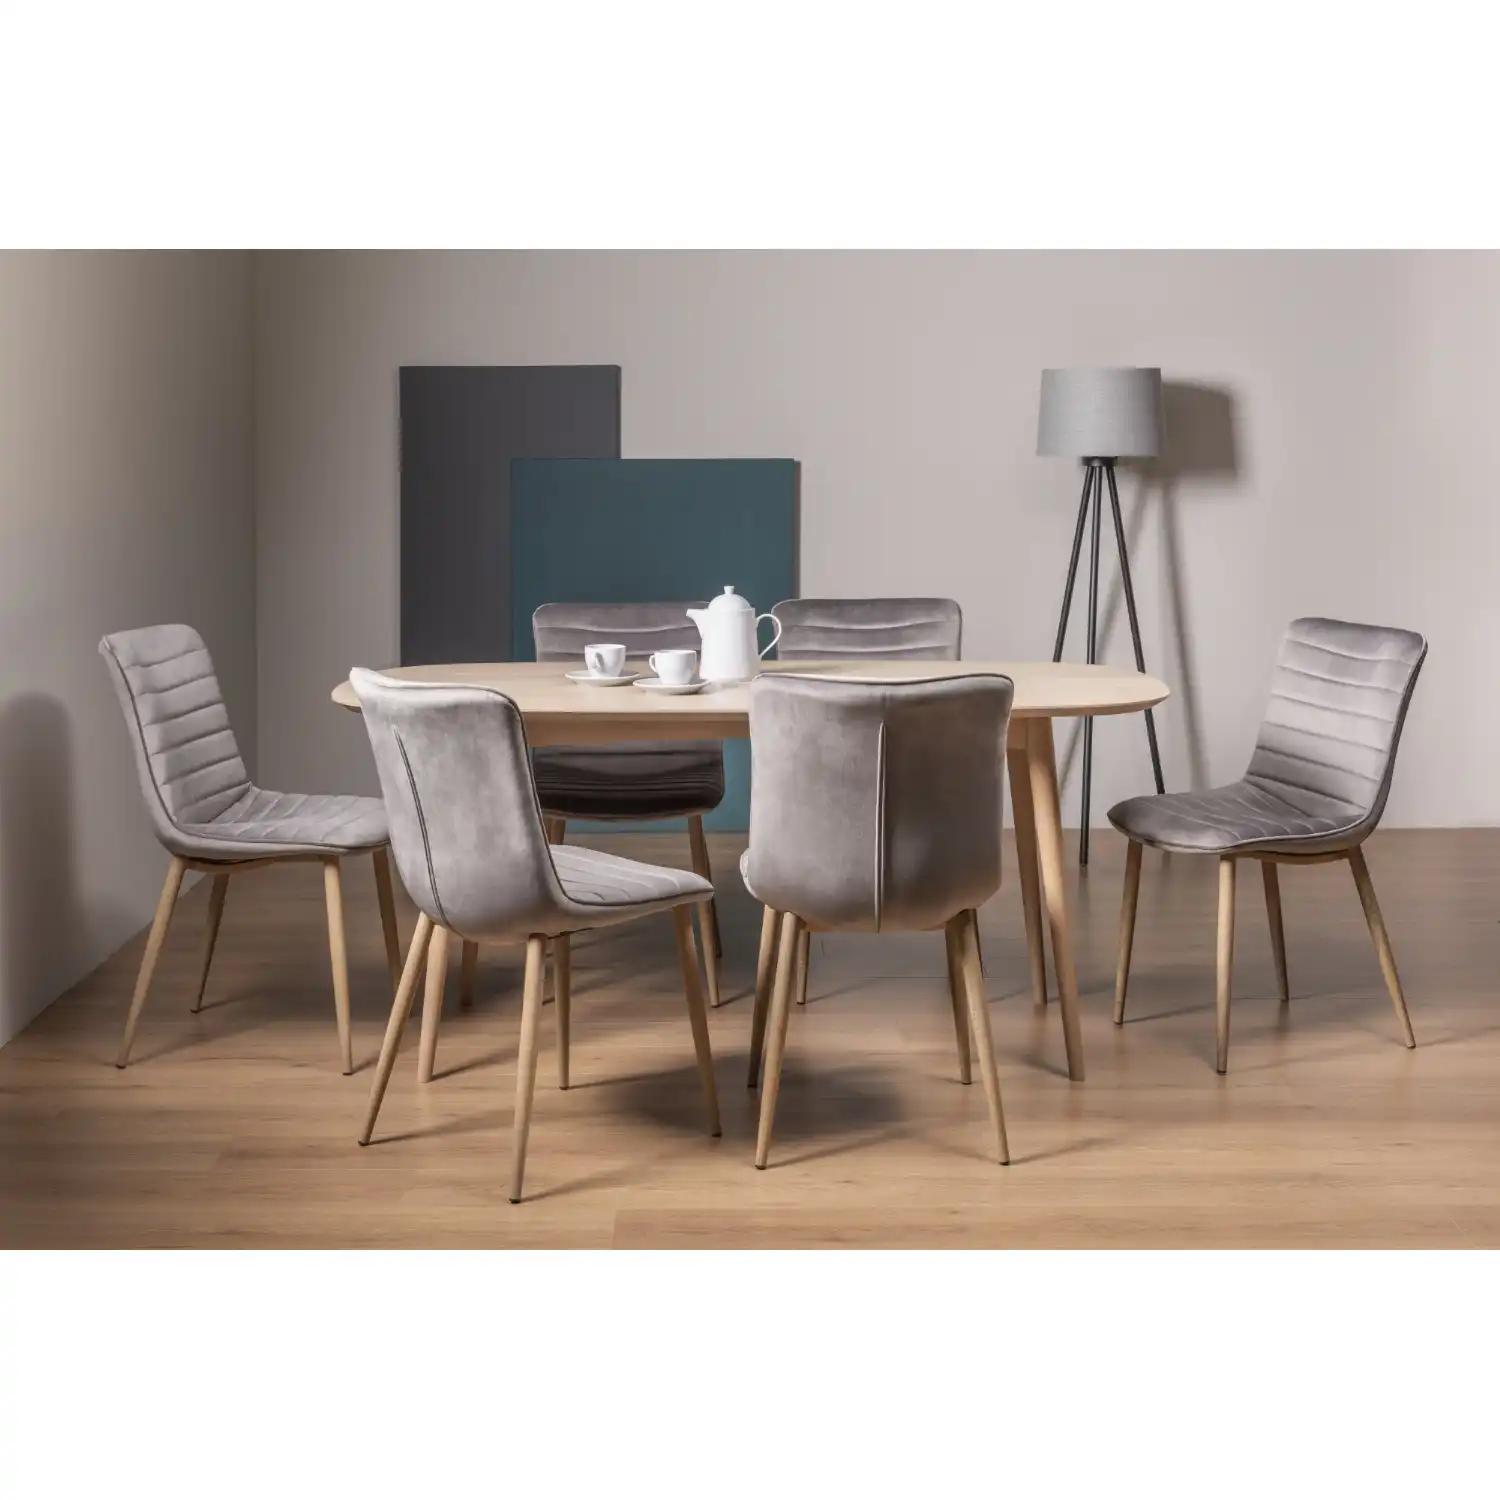 Scandi Oak Large Dining Set Light Grey Fabric Chairs